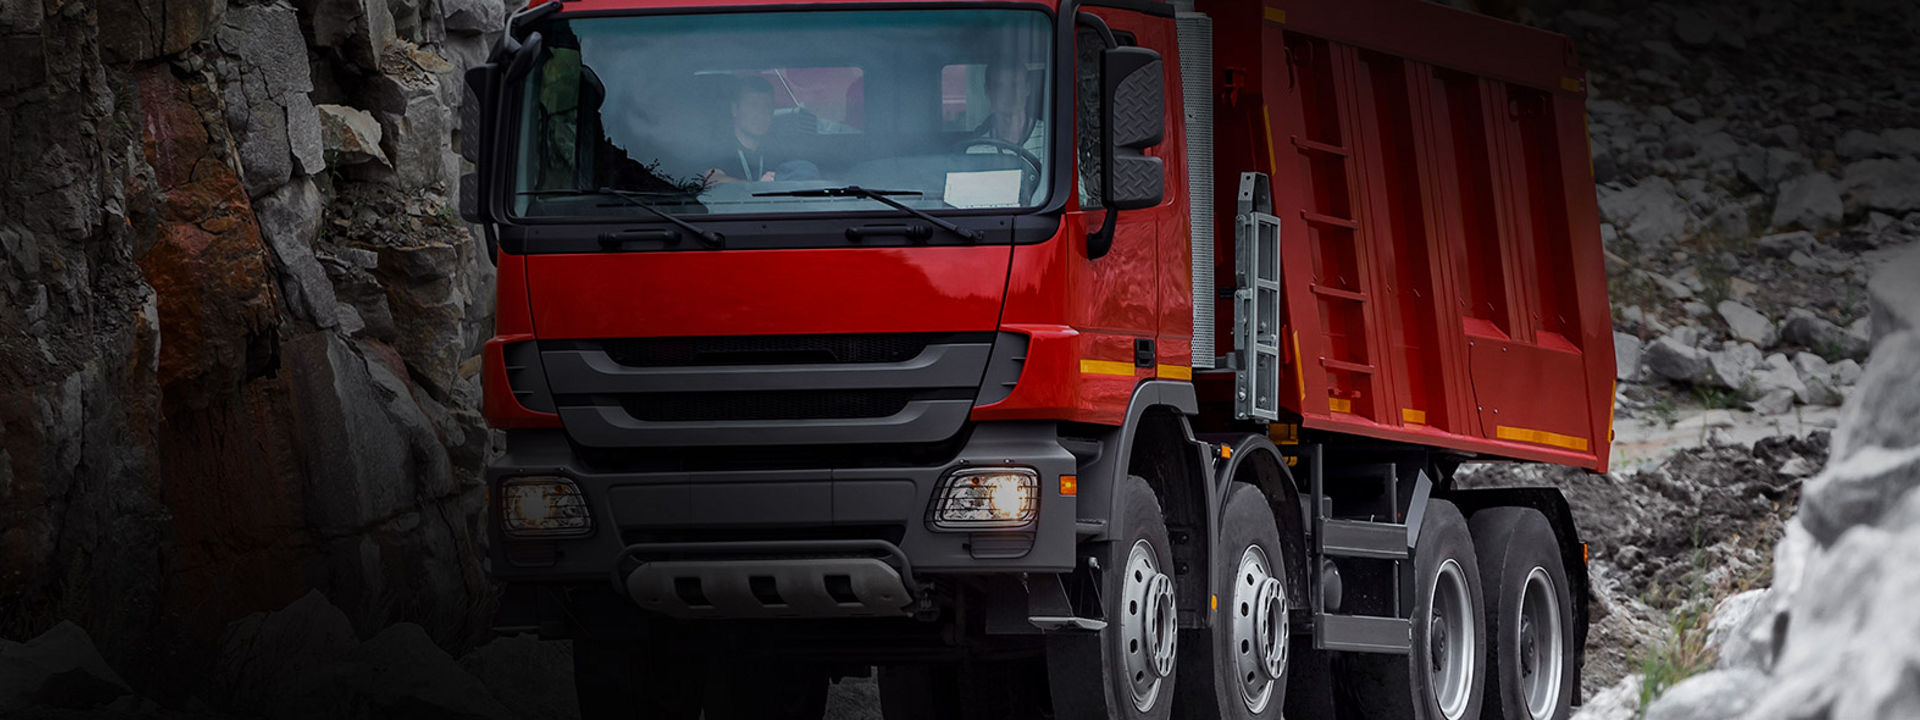 Această imagine este un camion care folosește anvelope Bridgestone pentru camioane ușoare și medii, pentru a livra mărfuri în centrul unui oraș.